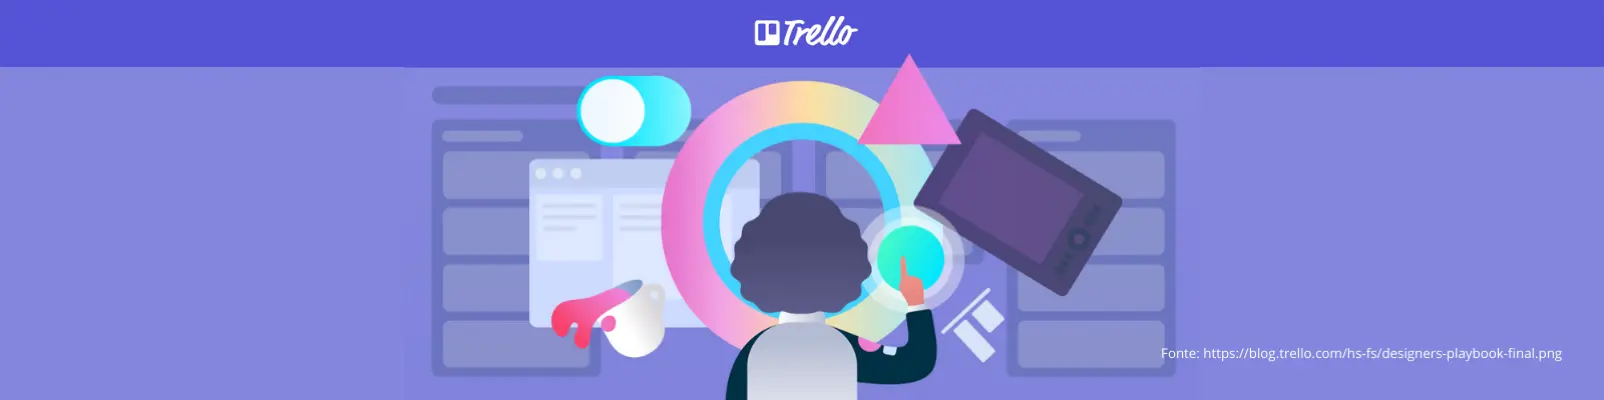 Como o Trello pode ajudá-lo a executar um plano de marketing de sucesso